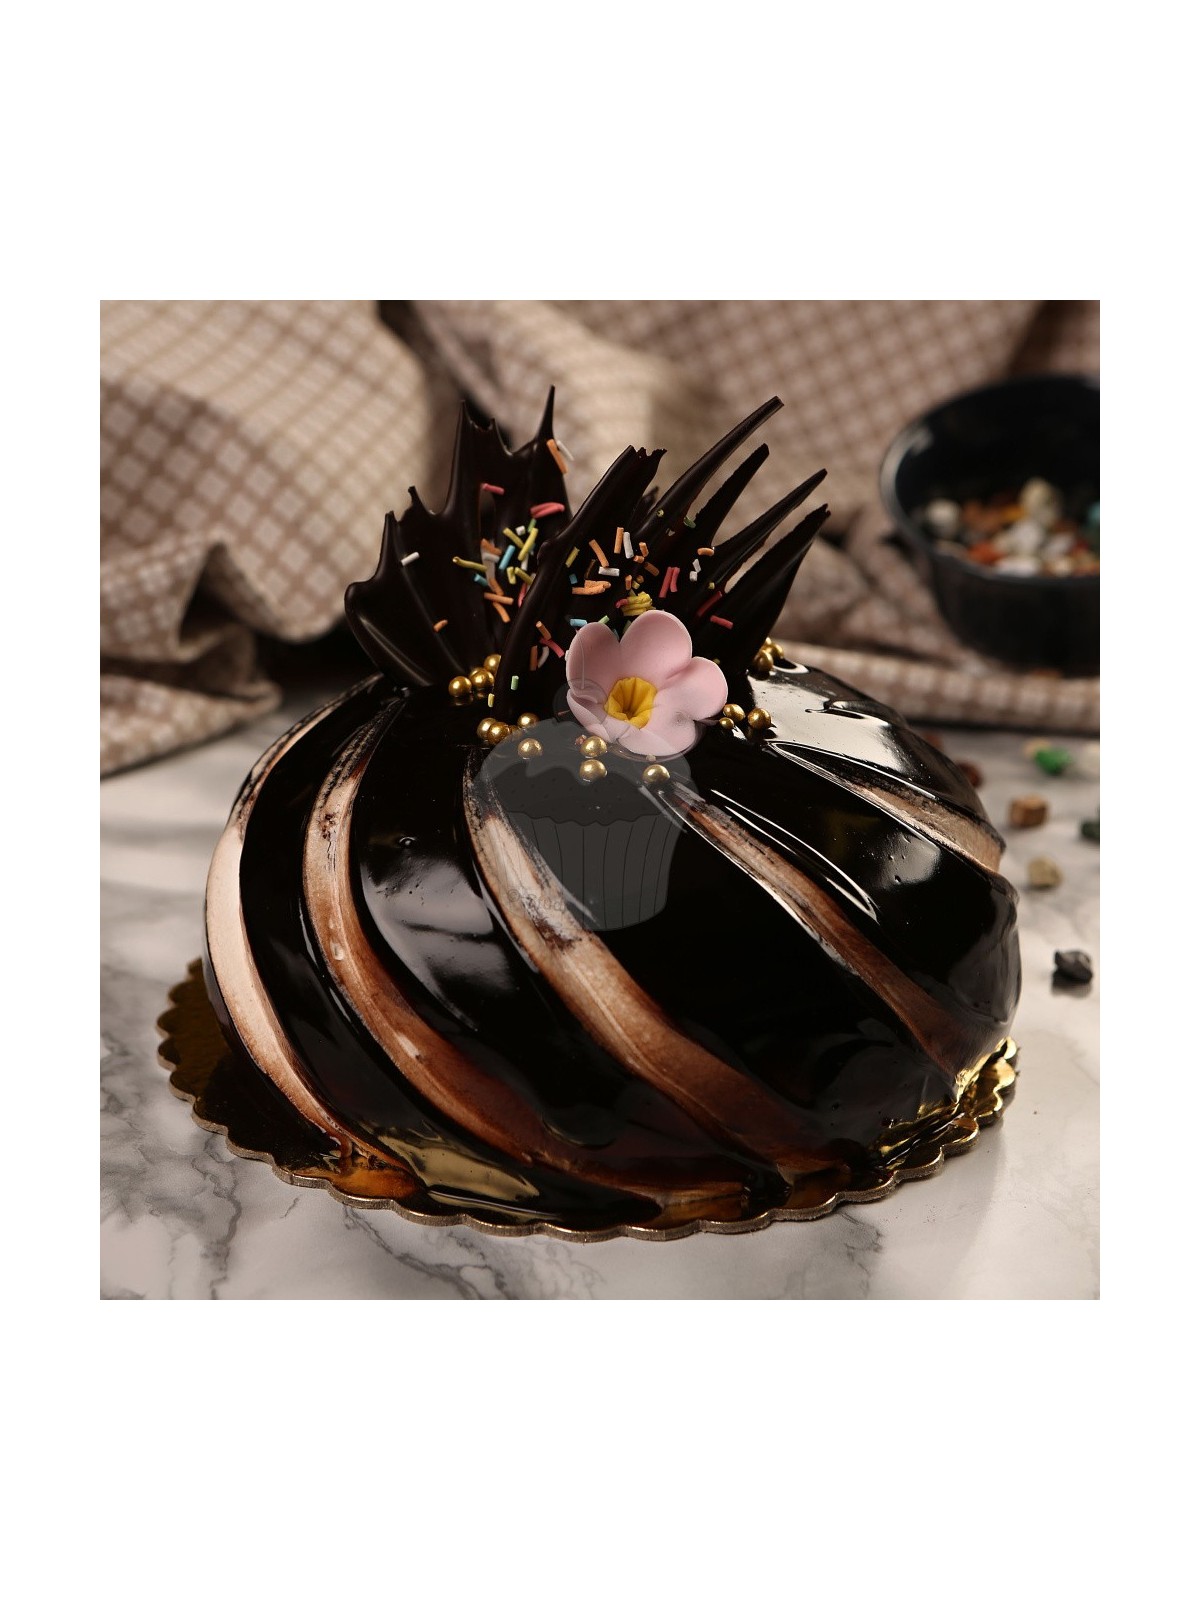 MIRALL lustrzana glazura z wysokim połyskiem - DARK CHOCOLATE - CIOCCOLATO FONDENTE - 250g